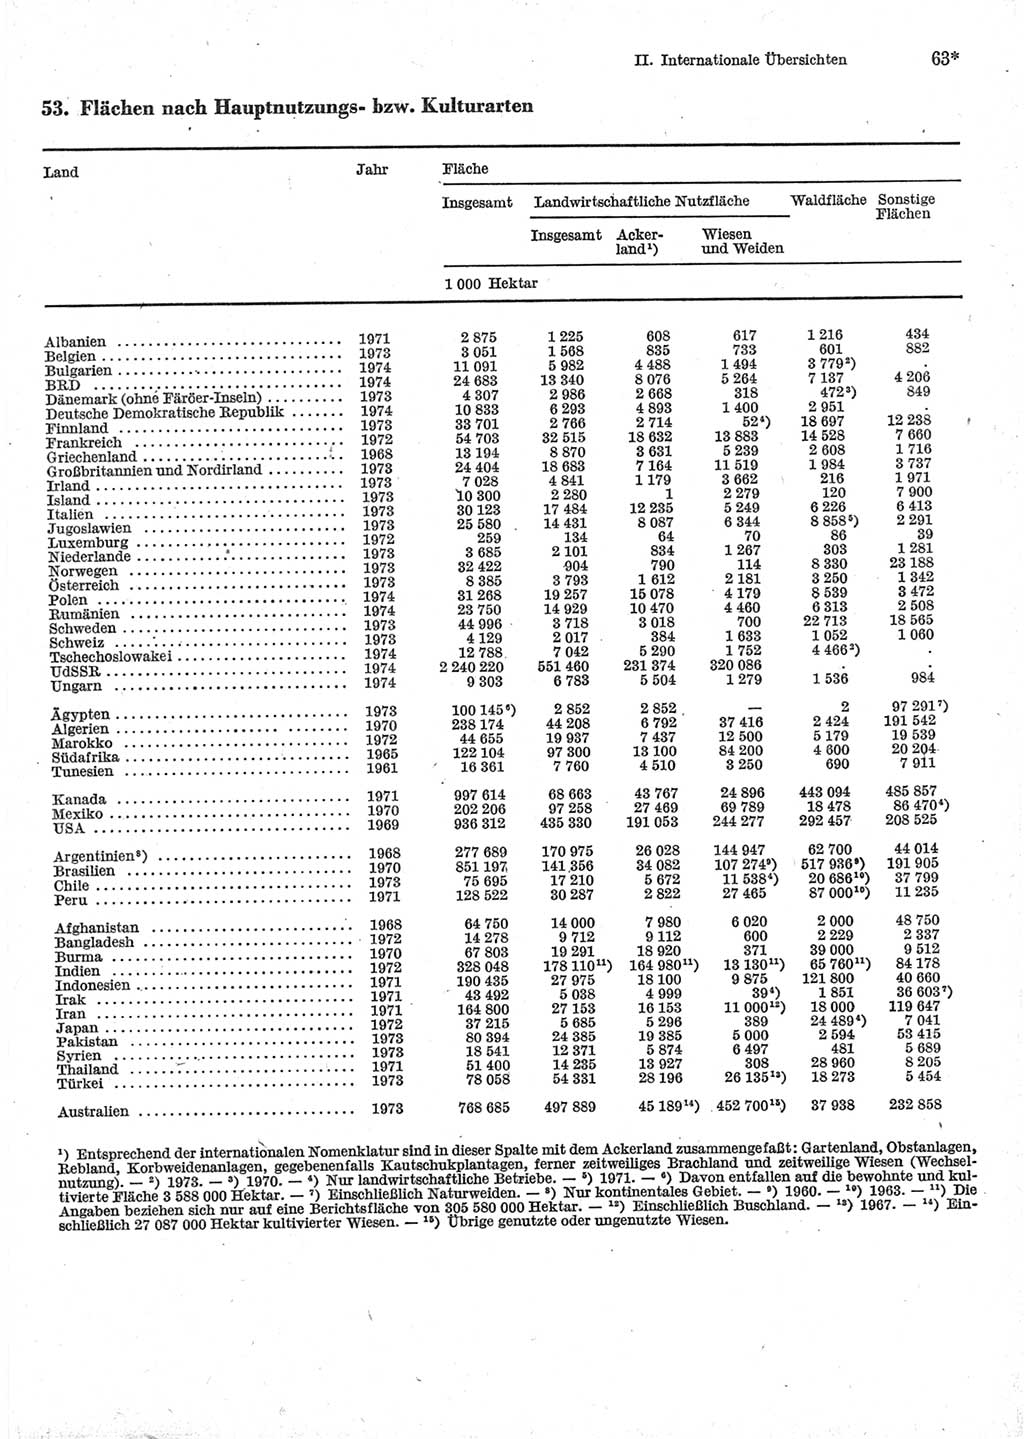 Statistisches Jahrbuch der Deutschen Demokratischen Republik (DDR) 1976, Seite 63 (Stat. Jb. DDR 1976, S. 63)